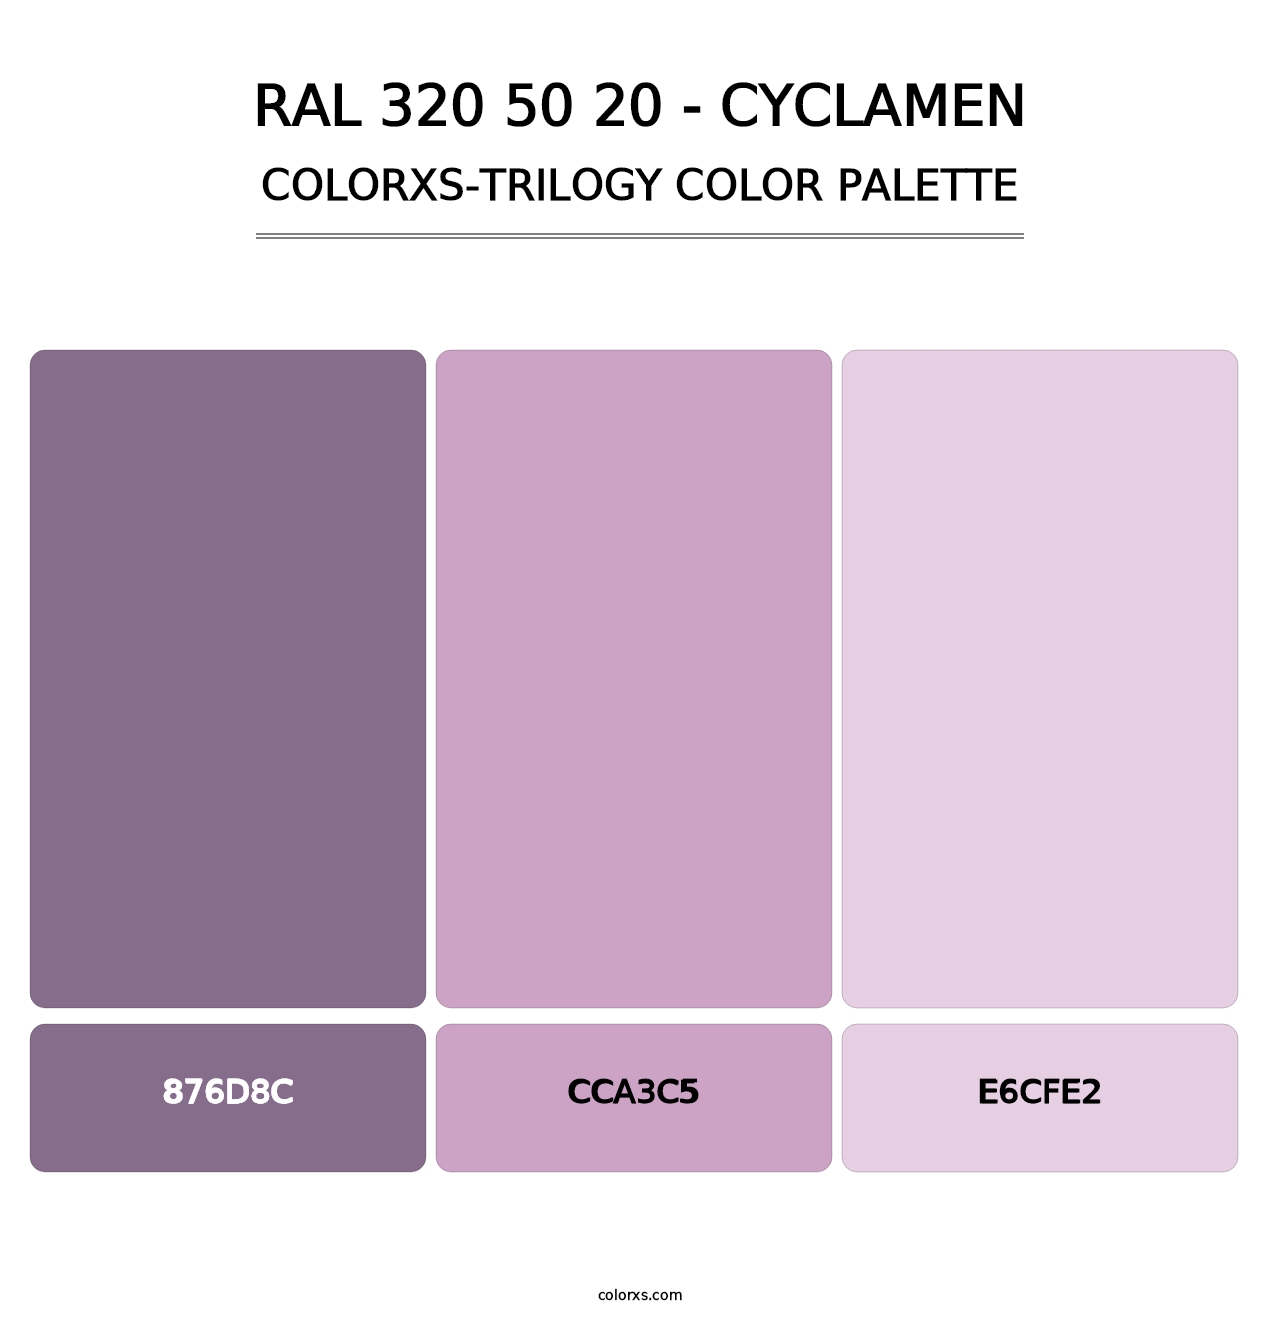 RAL 320 50 20 - Cyclamen - Colorxs Trilogy Palette